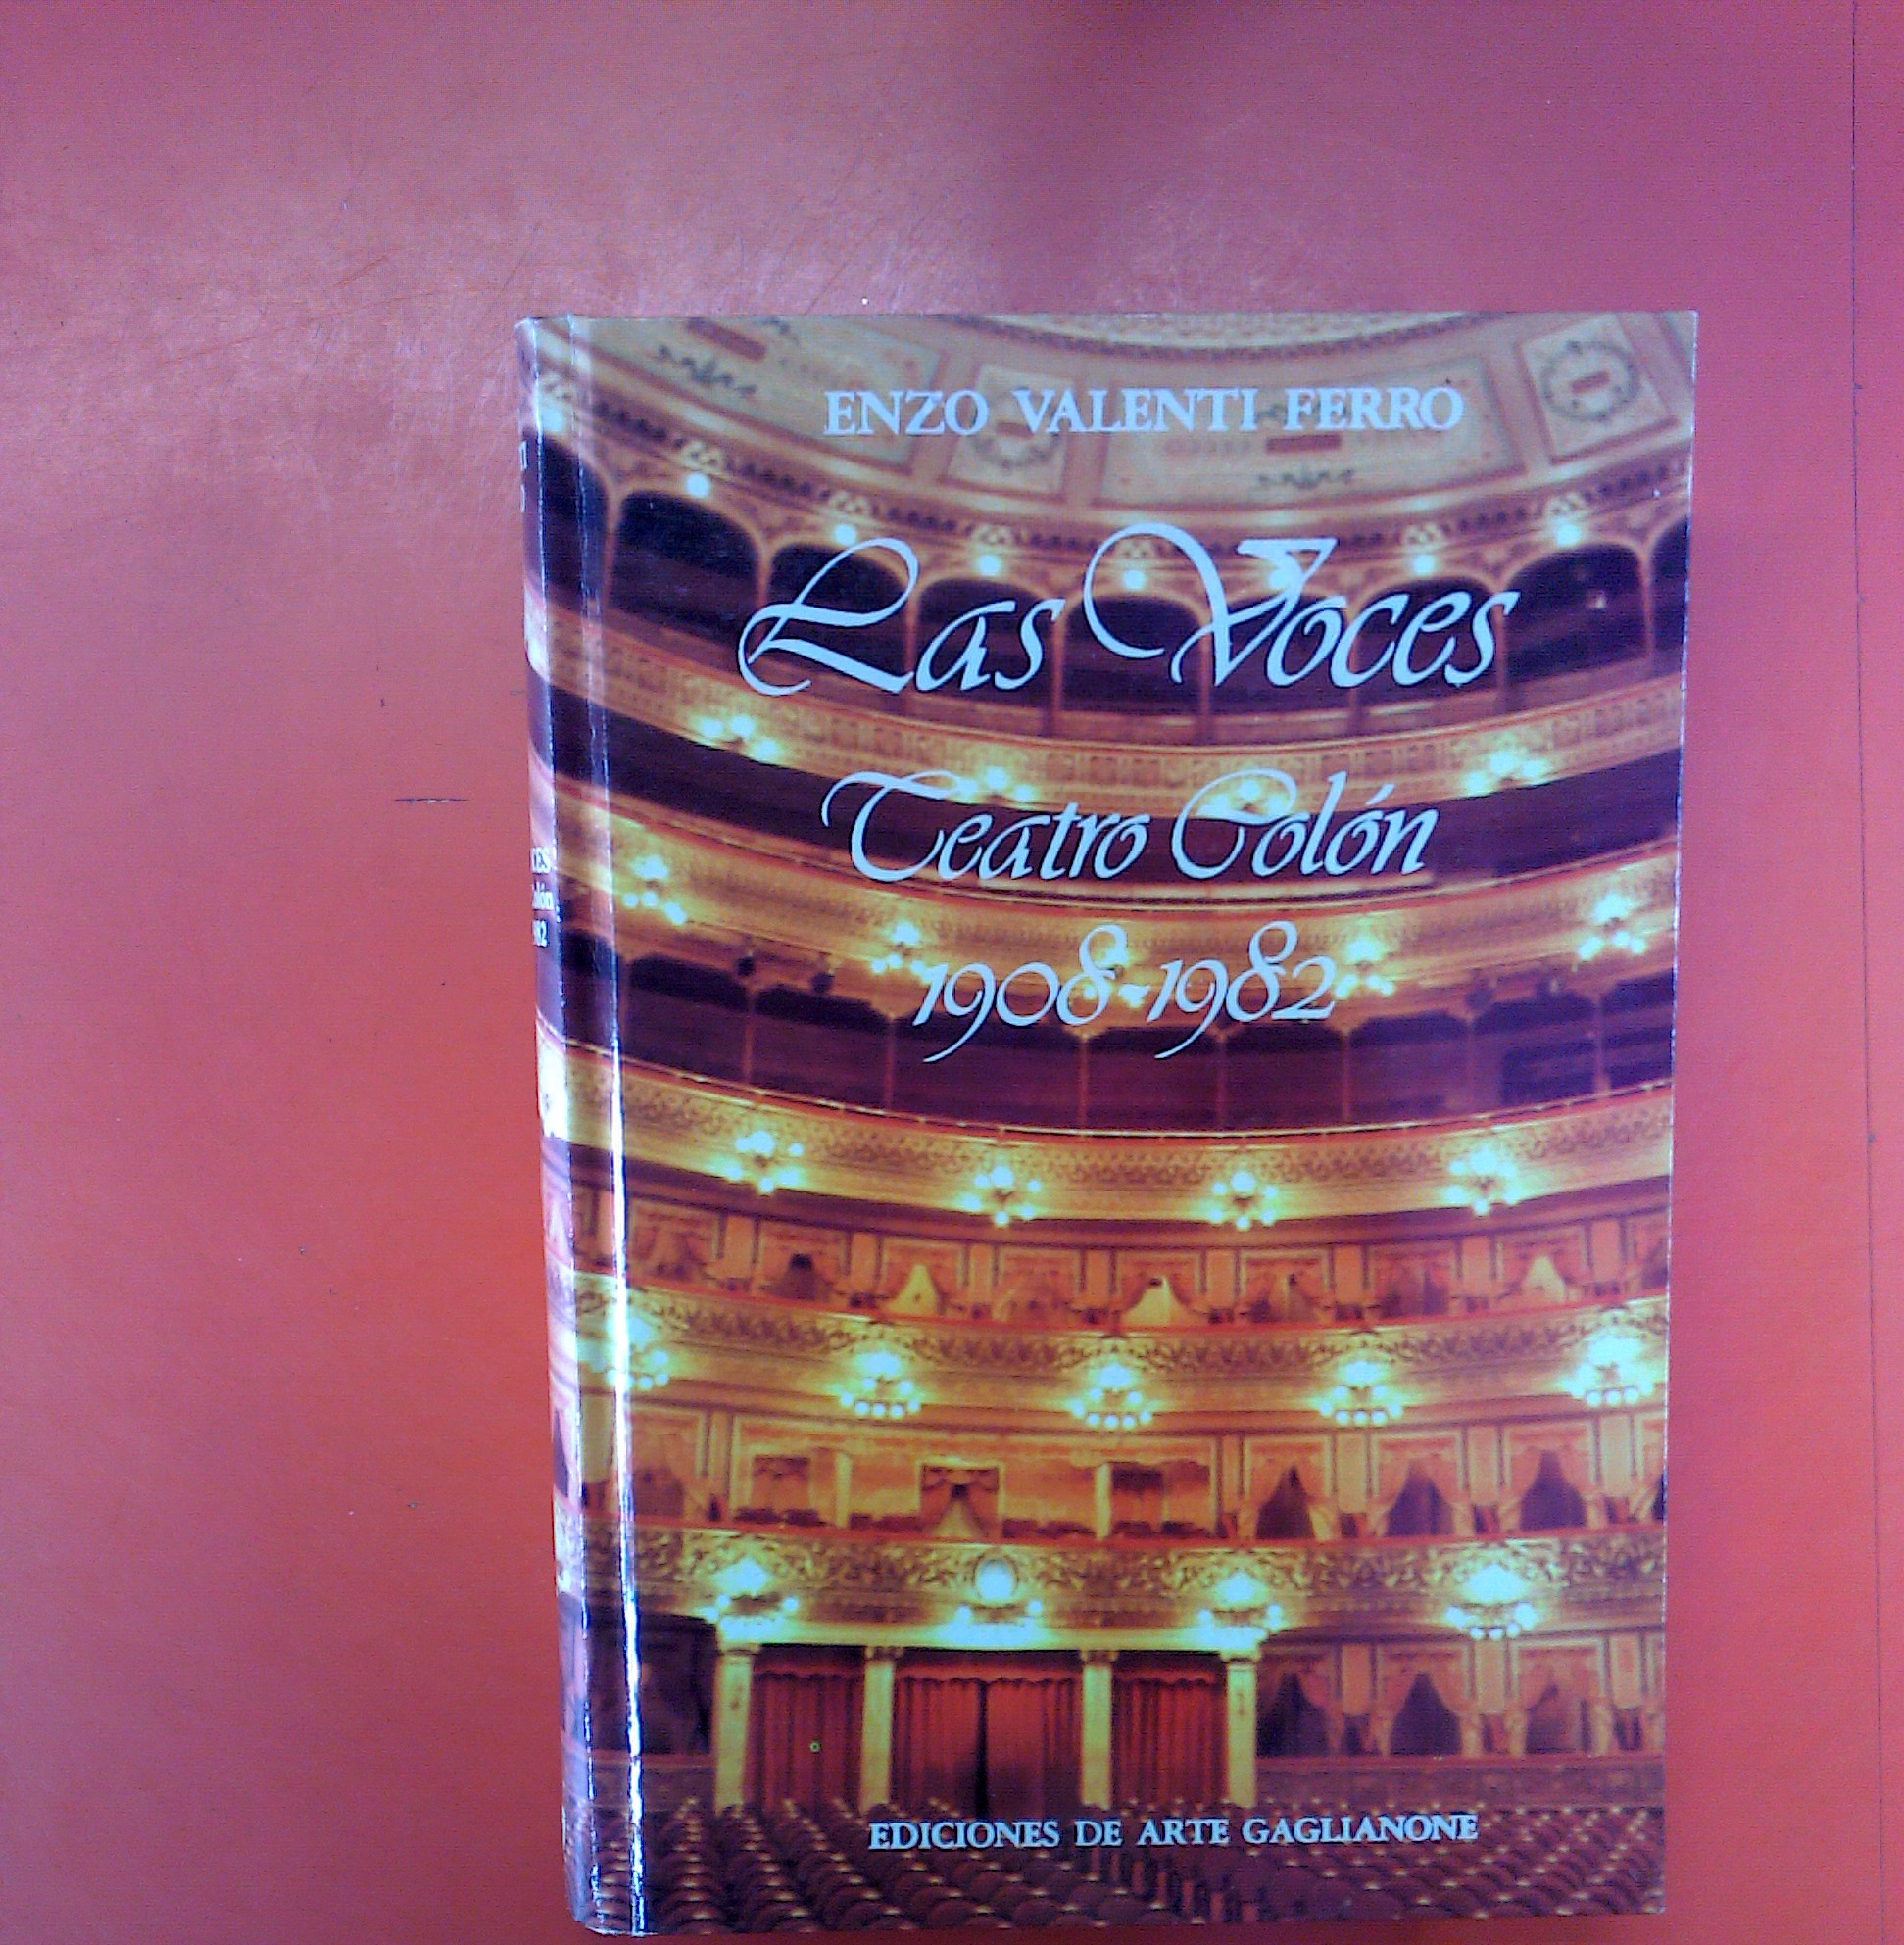 Las Voces. Teatro Colón 1908 - 1982. Ejemplar N° 2189 - Enzo Valenti Ferro